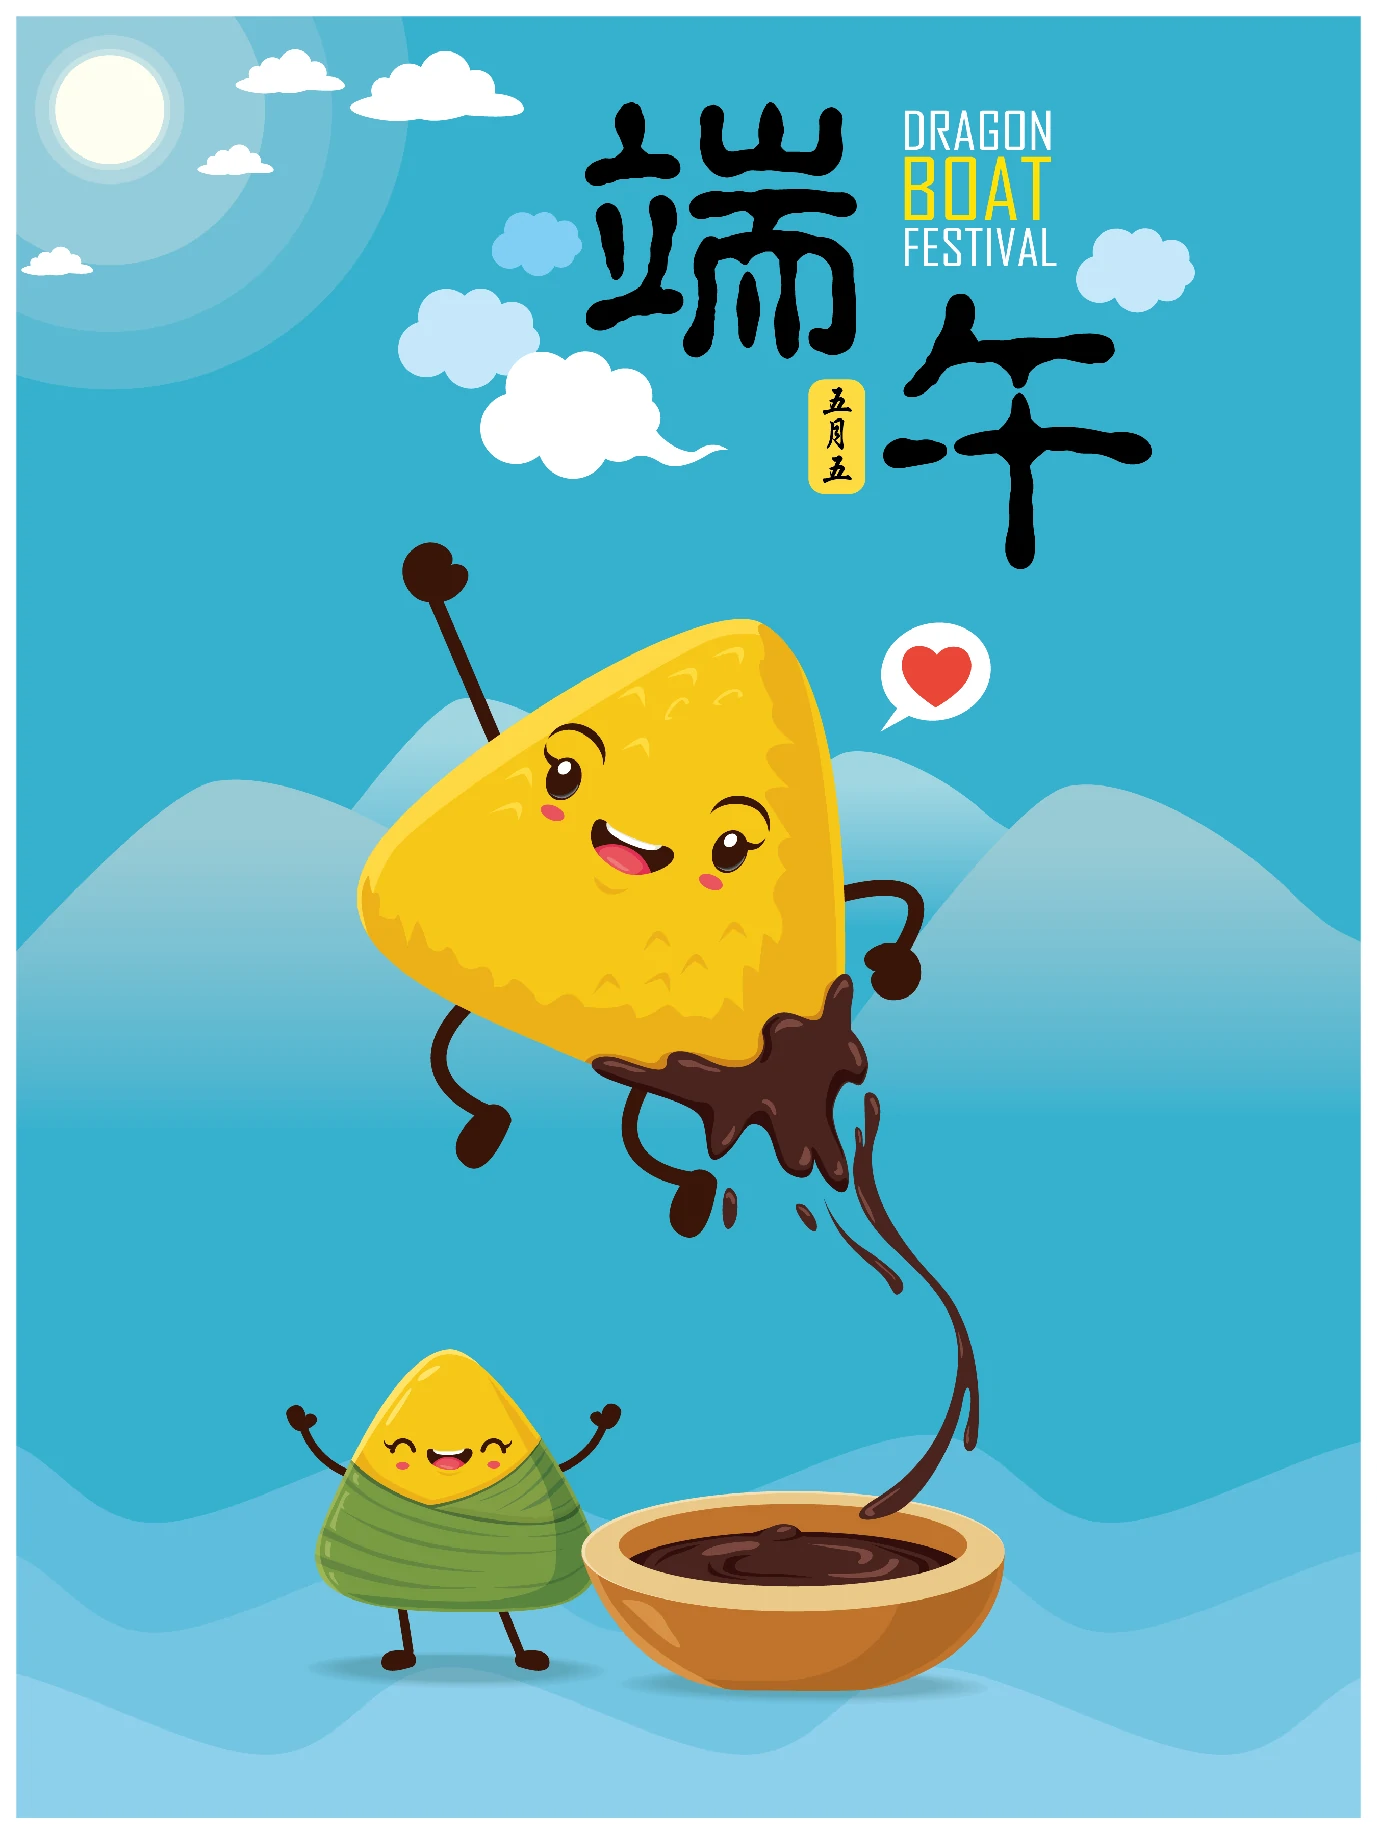 中国传统节日卡通手绘端午节赛龙舟粽子插画海报AI矢量设计素材【078】